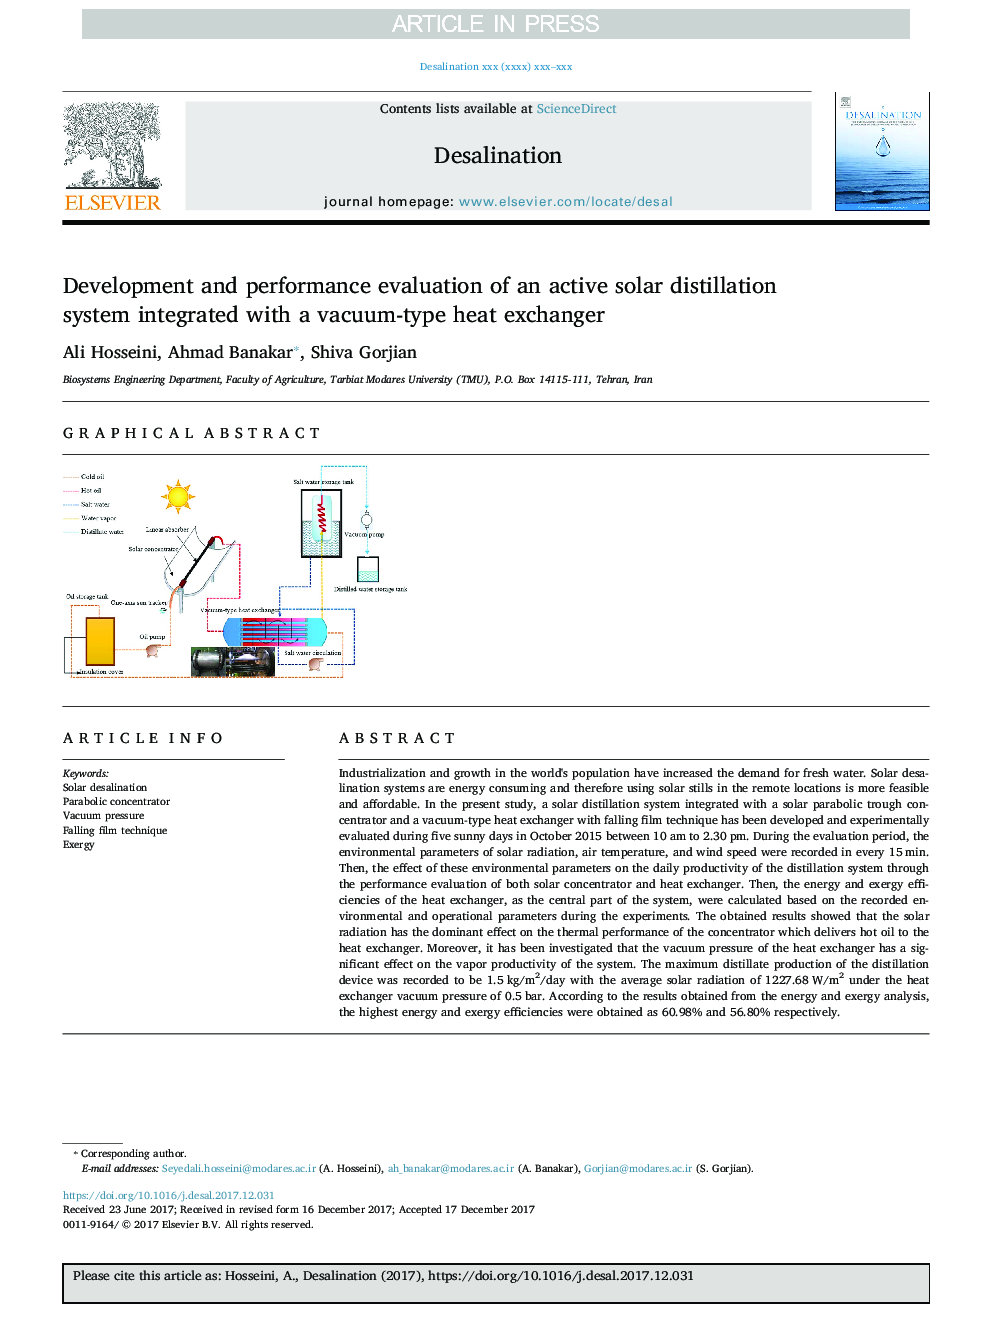 ارزیابی توسعه و عملکرد یک سیستم تقطیر فعال خورشیدی یکپارچه با مبدل حرارتی خلاء 